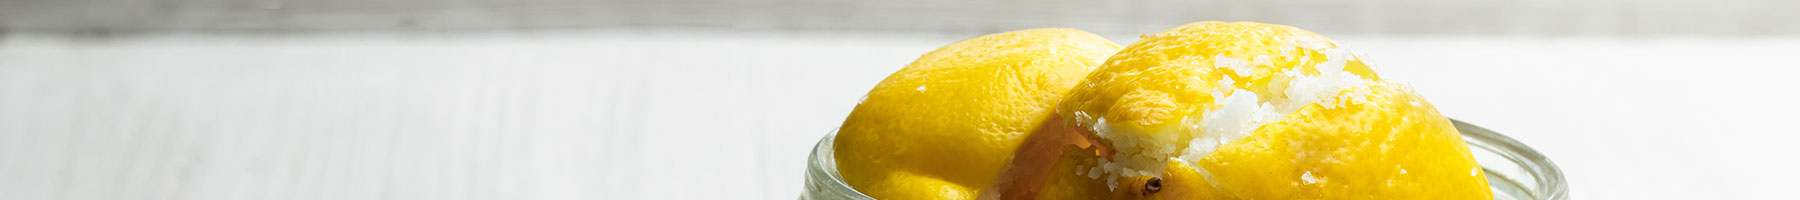 Salt-preserved lemons in a jar